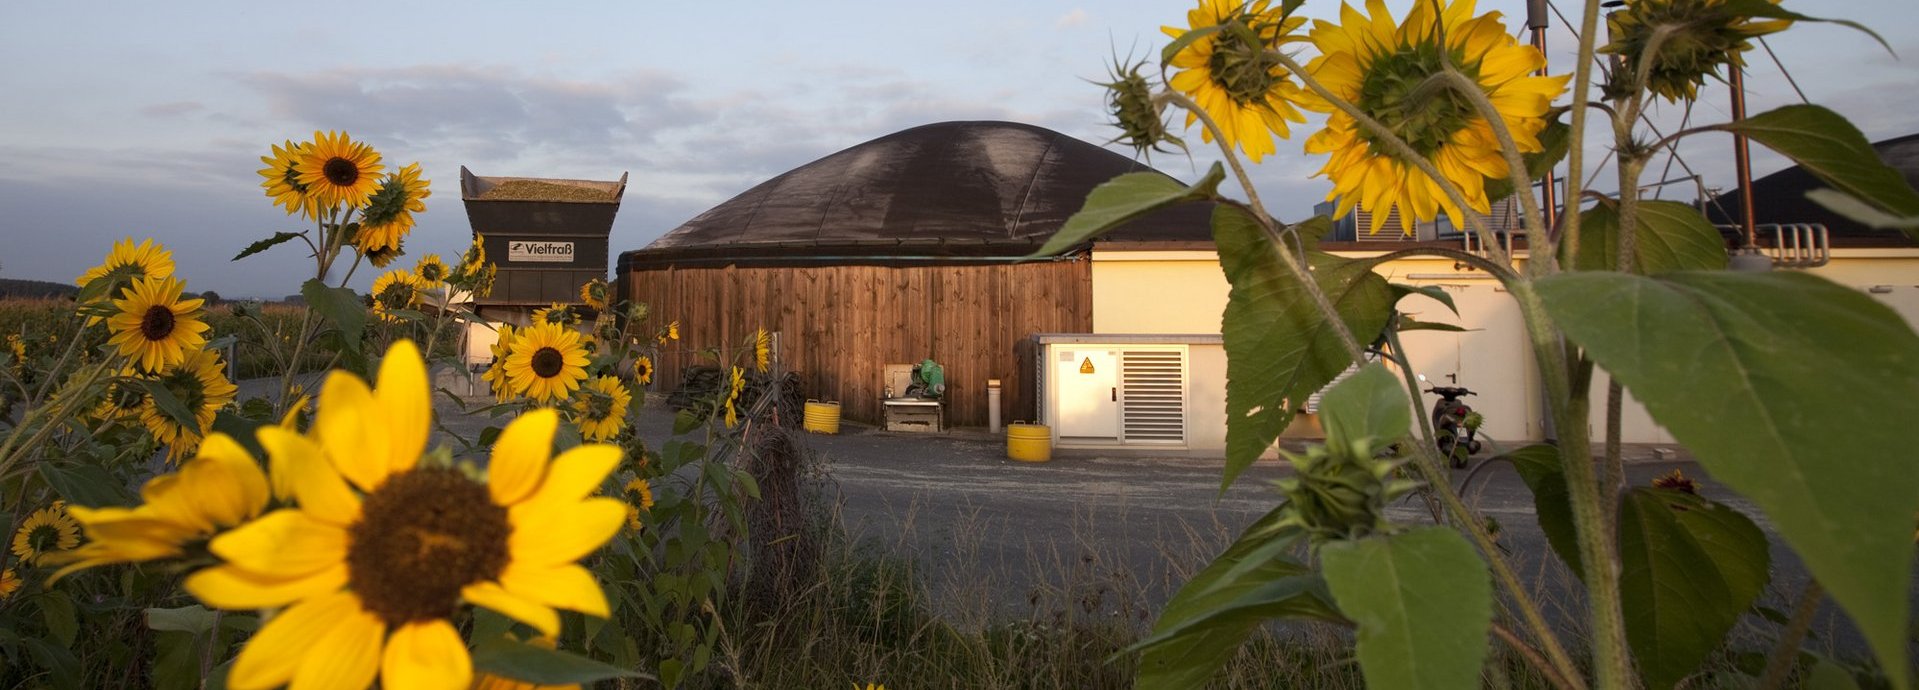 Sonnenblumen im Vordergrund mit einer Biogasanlage vor blauem Himmel im Hintergrund